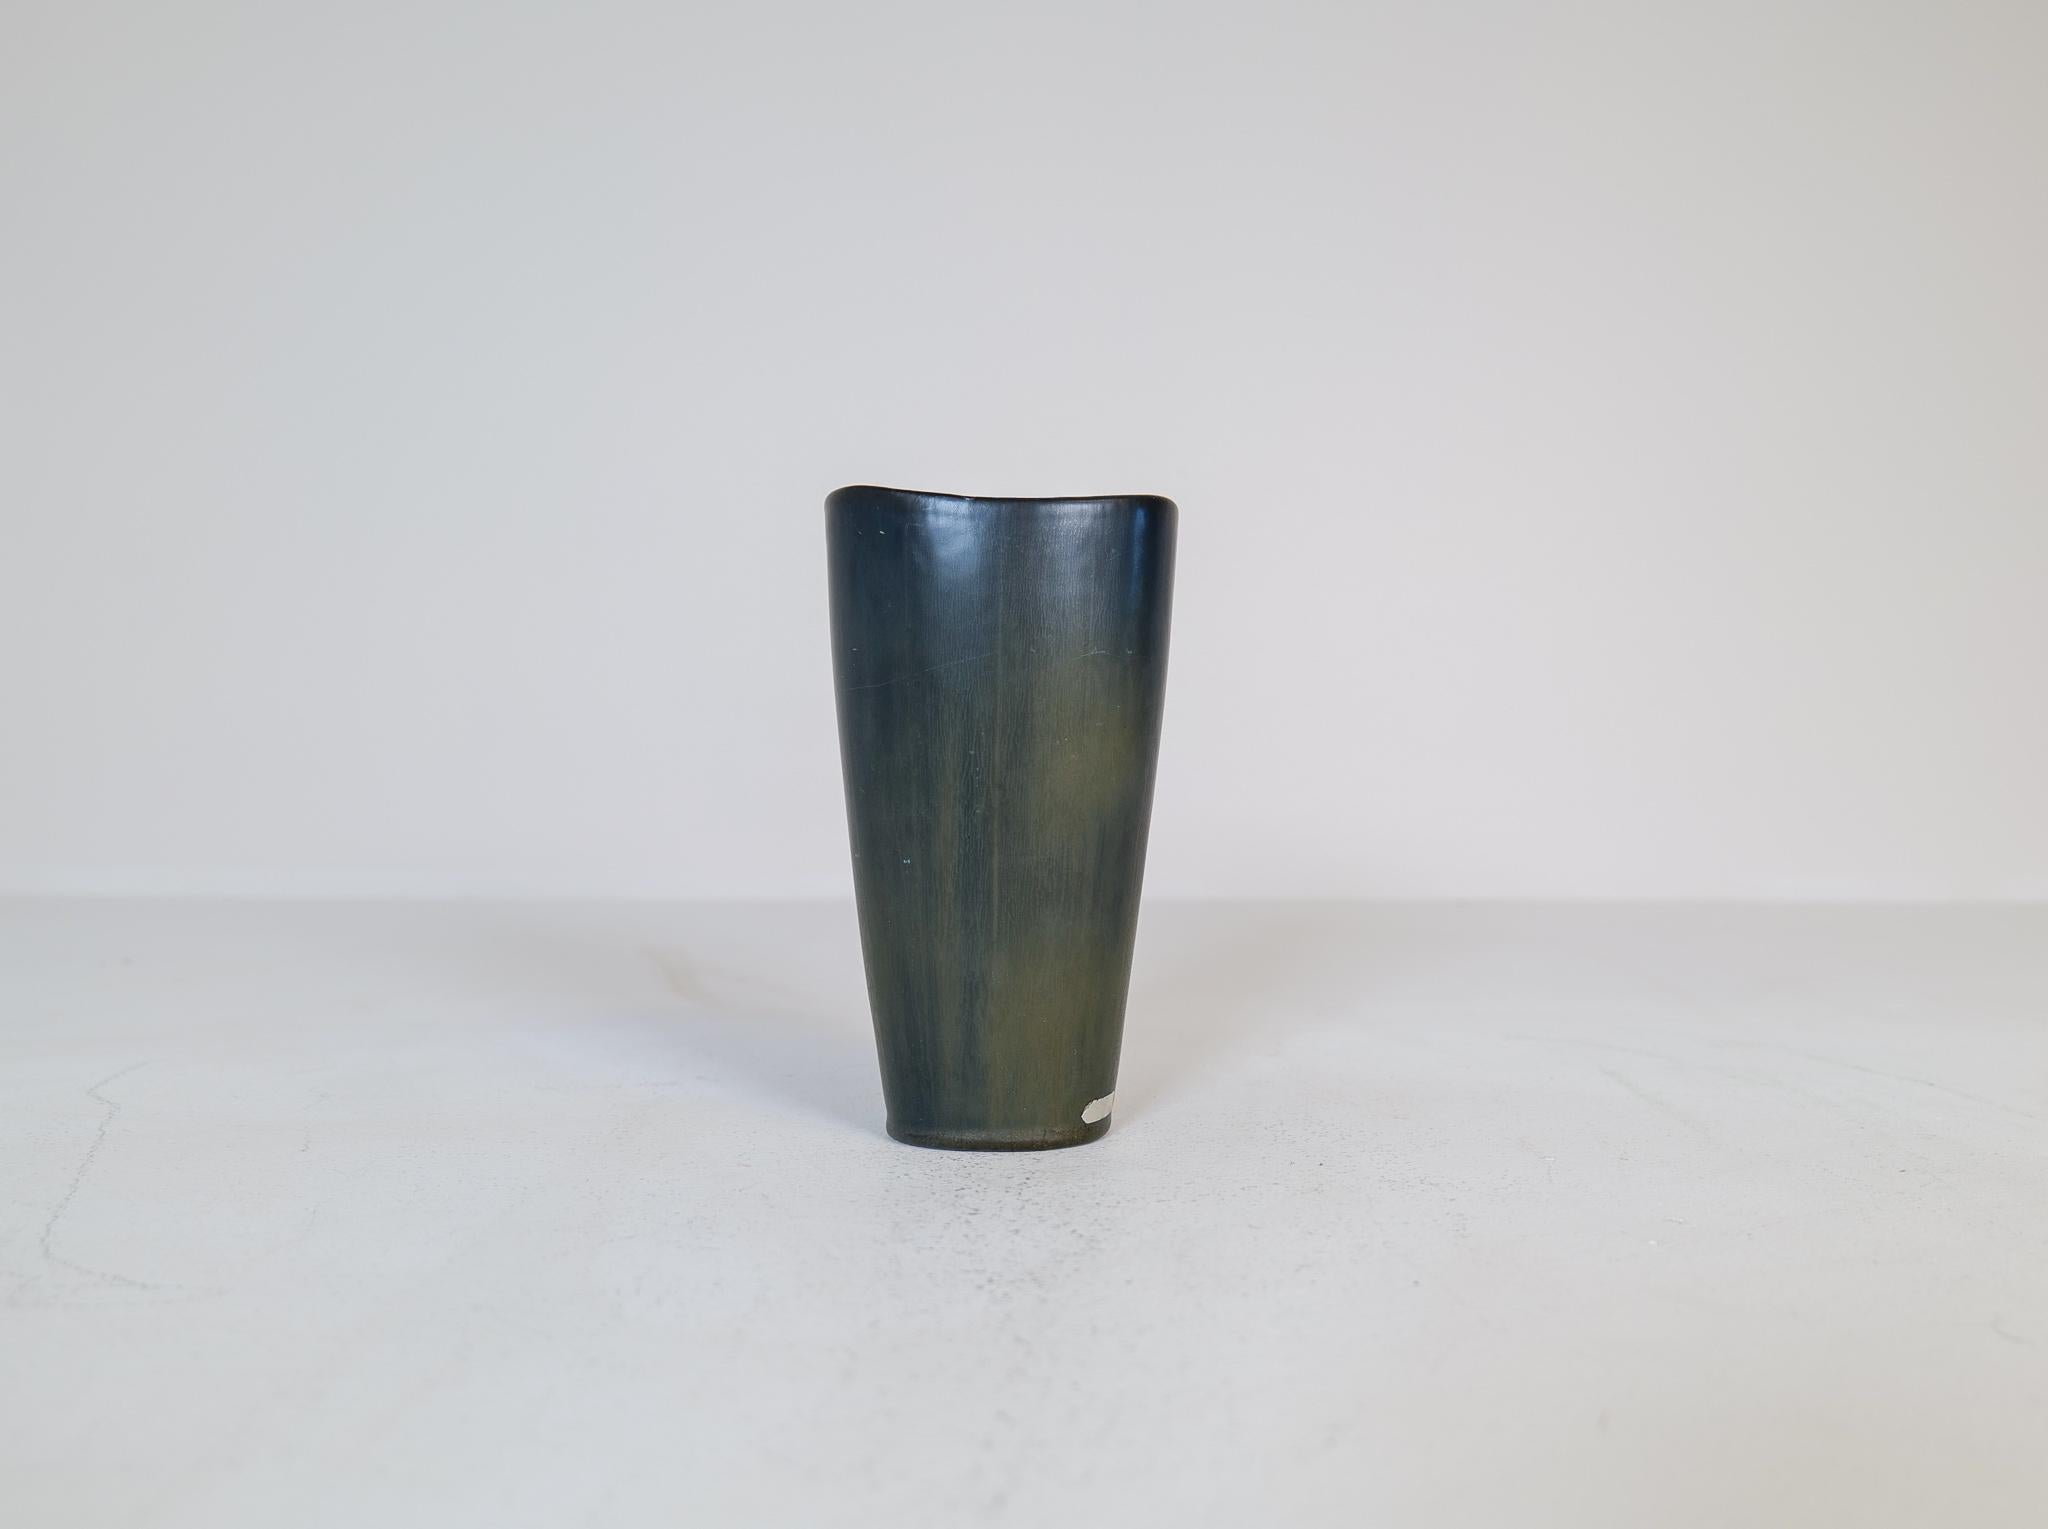 Diese fantastische Vase wurde in den 1950er Jahren in Schweden bei Rörstrand hergestellt und von Gunnar Nylund entworfen. 
Wunderschön in seiner wechselnden Glasur (schwarz und grün) und seiner atemberaubenden Form. 

Guter Zustand. 

Maße: H